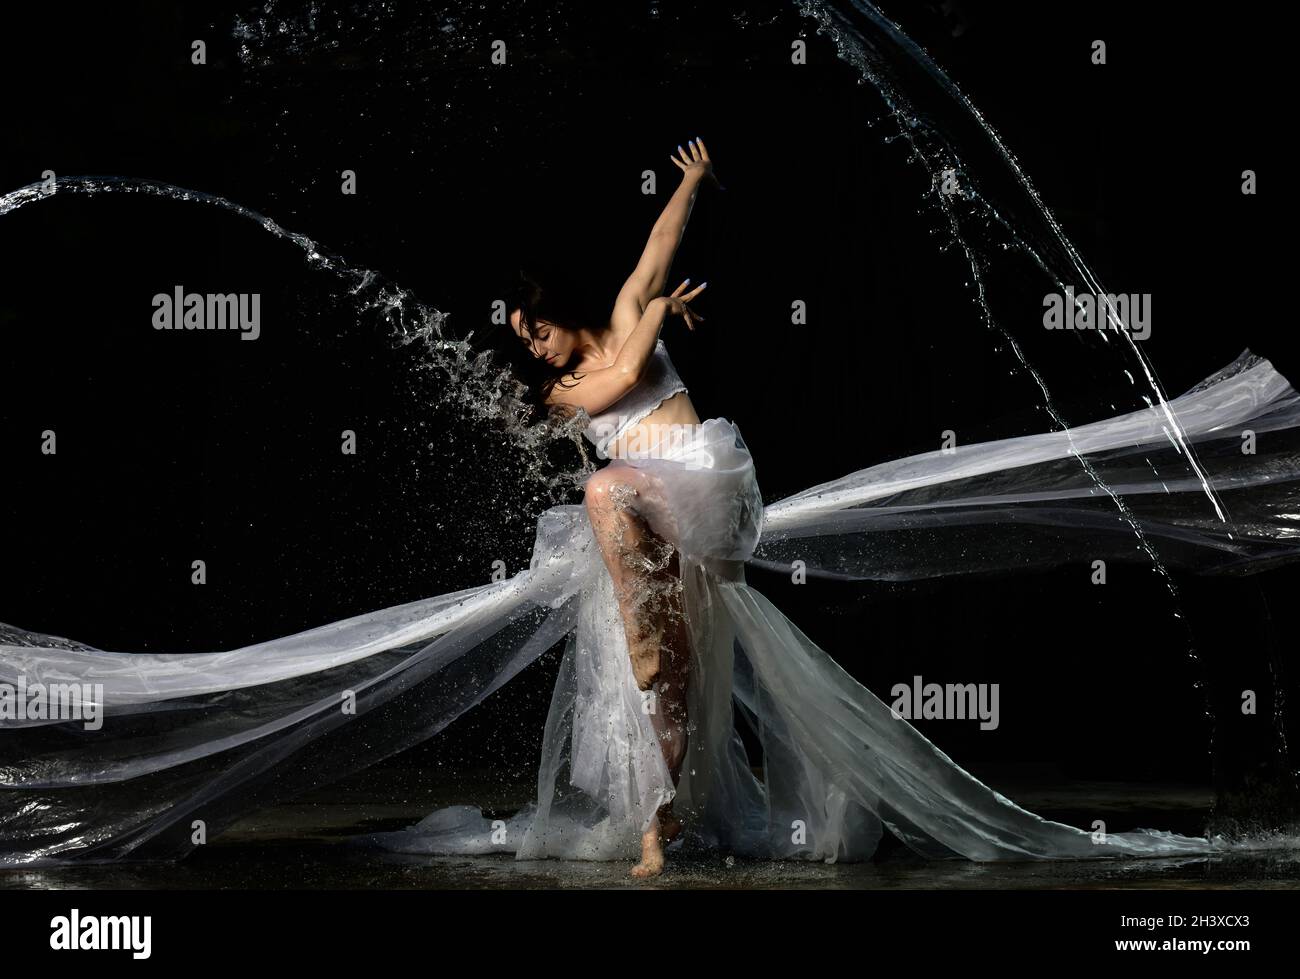 Jeune belle femme d'apparence caucasienne avec de longs cheveux danse dans des gouttes d'eau sur un fond noir Banque D'Images